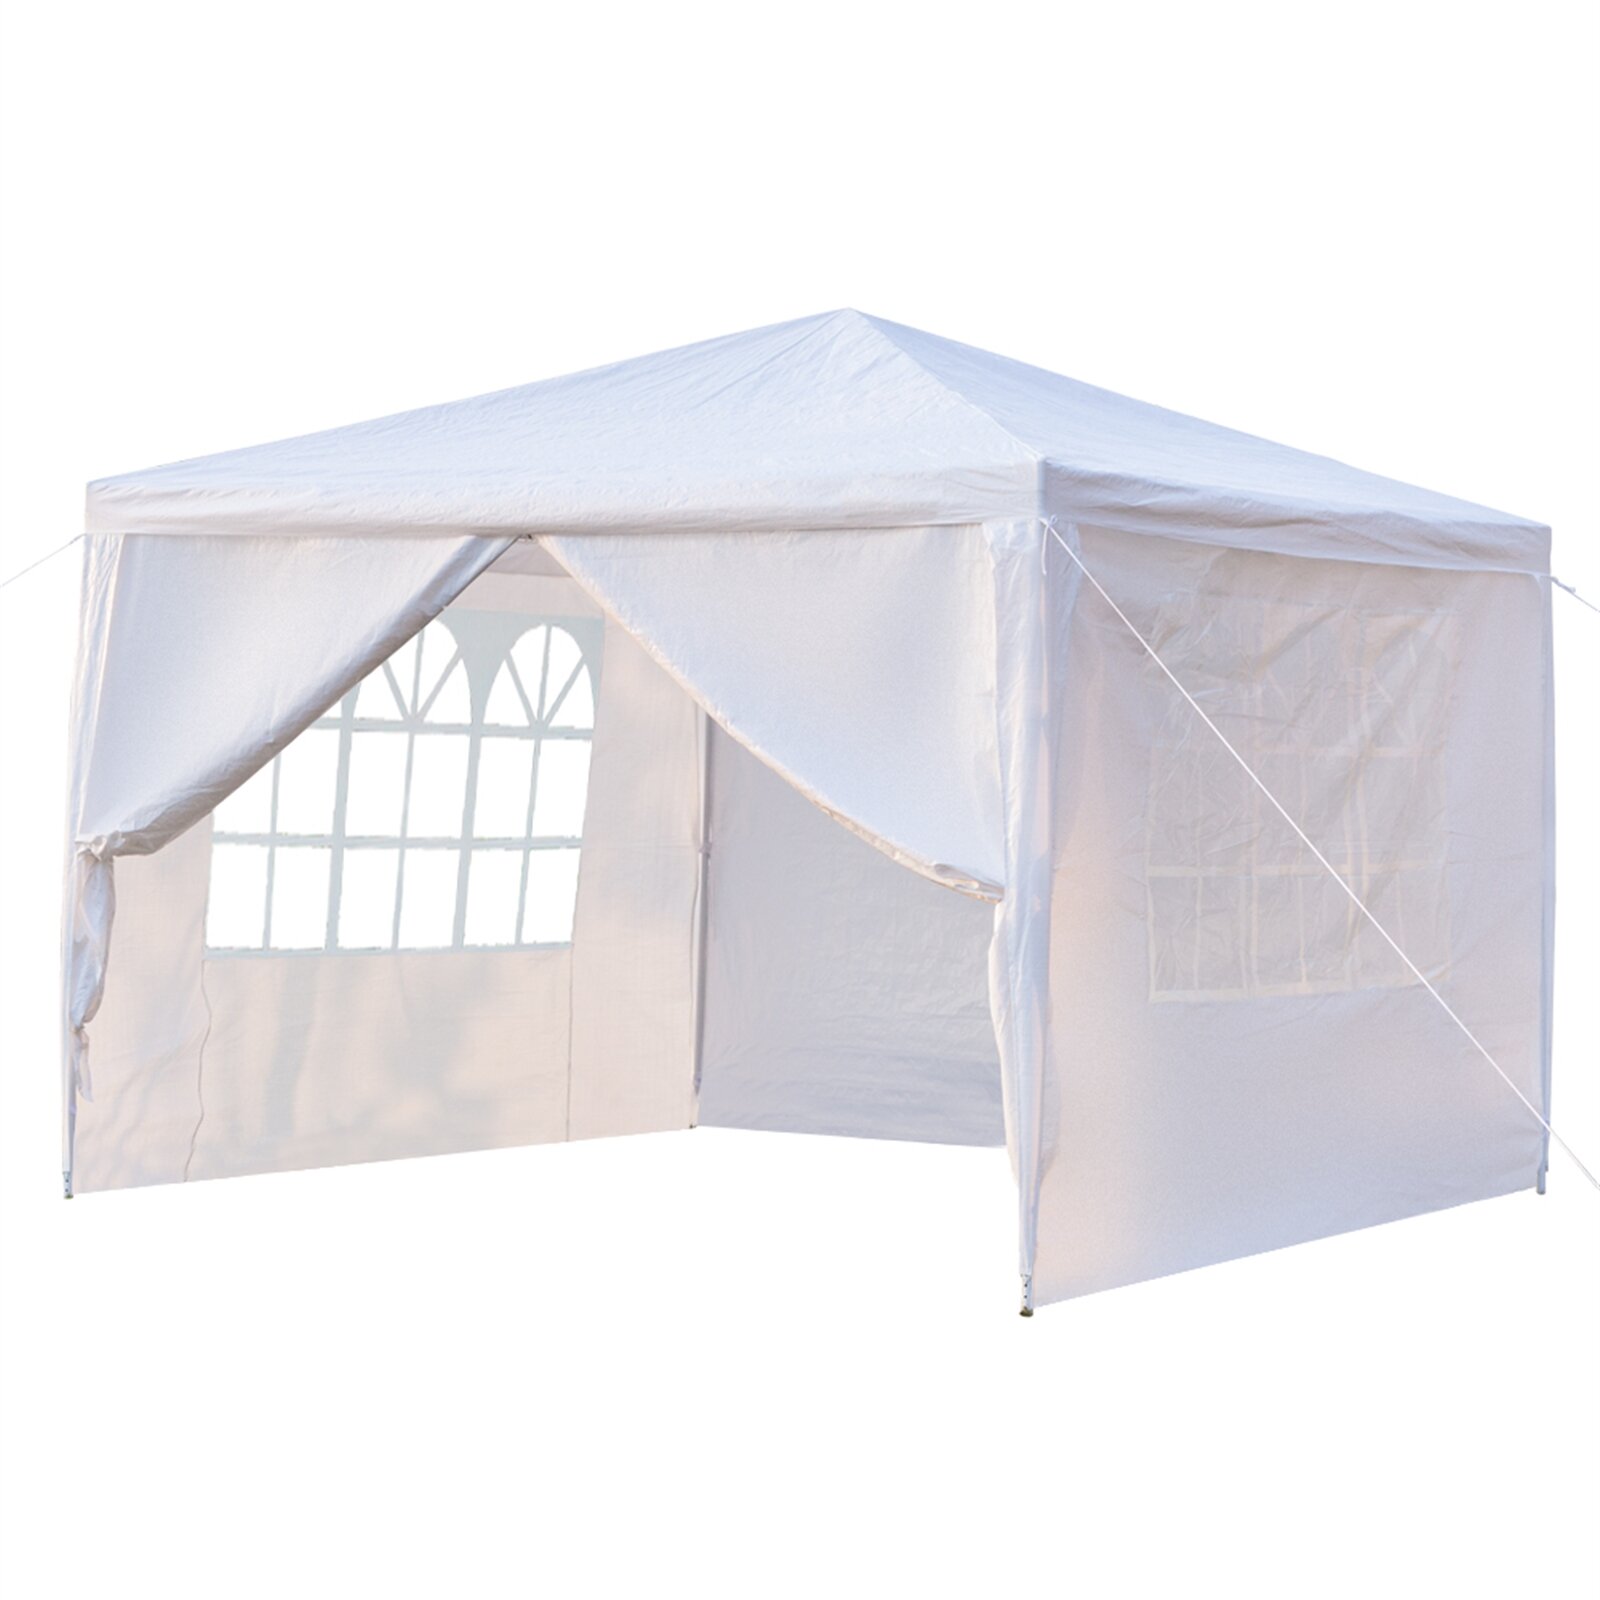 [US/UK/FR Direct] Camping Survivals 3 x 3 m vierseitiger Sonnenschutz, tragbar, Doppeltüren, Heimgebrauch, wasserdichter Zeltschutz mit Spiral Rohren, weiß